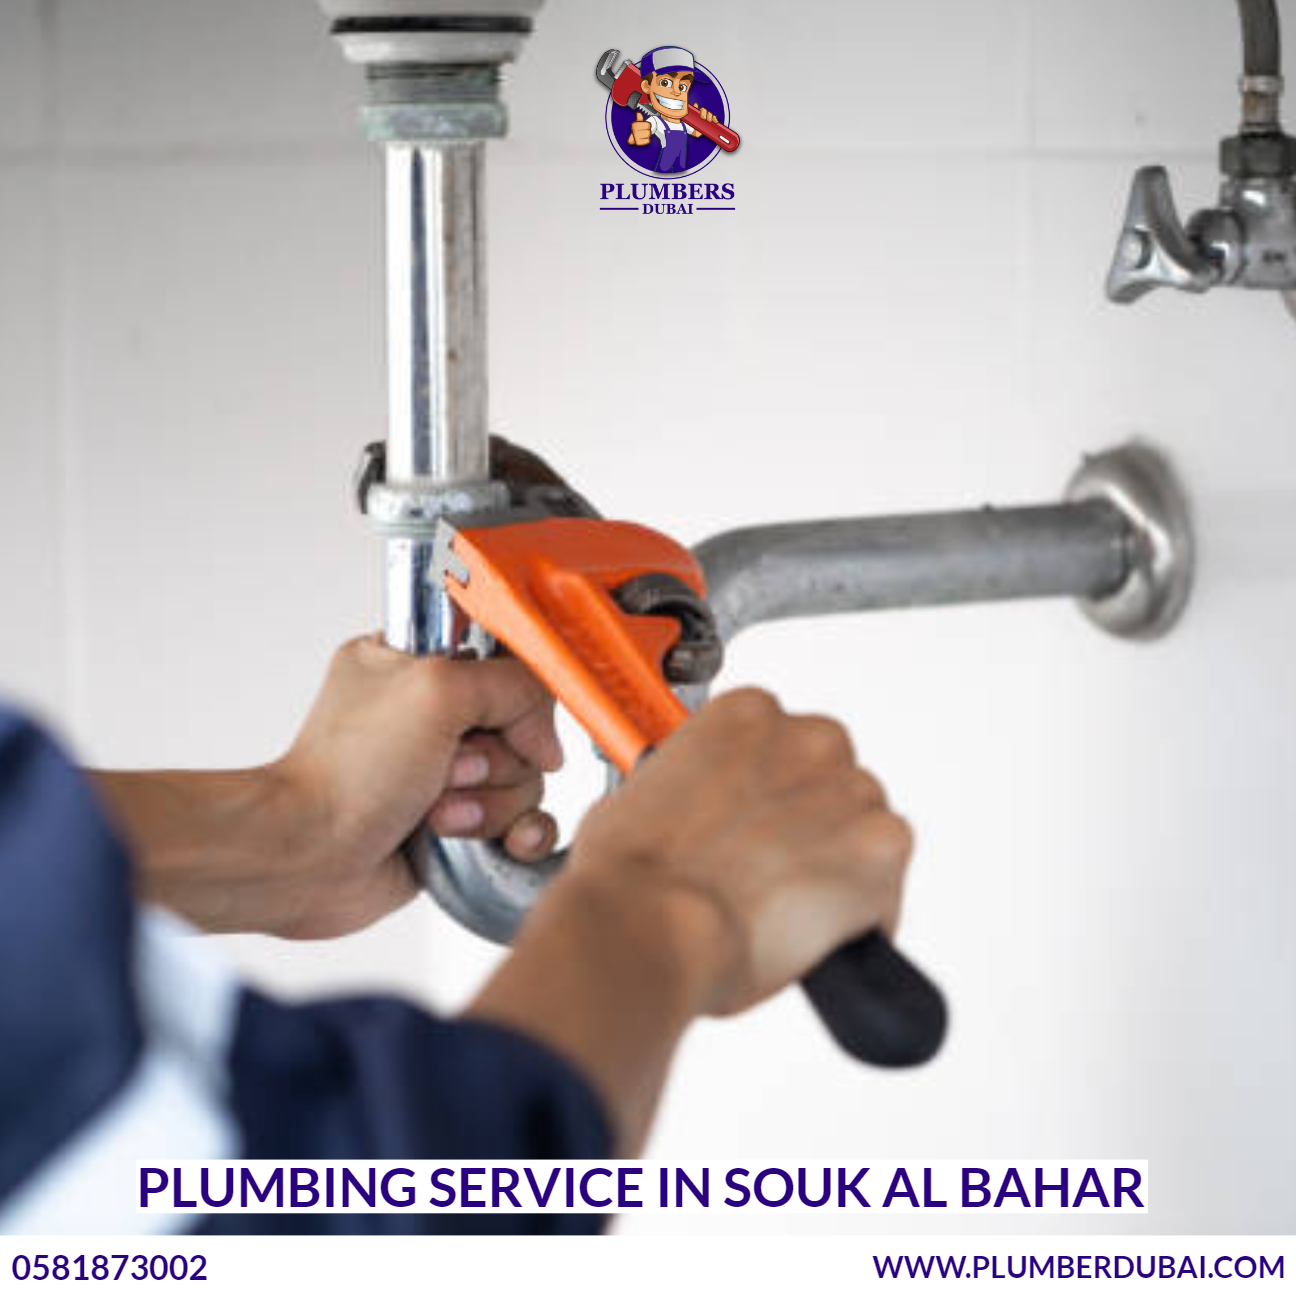 Plumbing Service in Souk Al Bahar